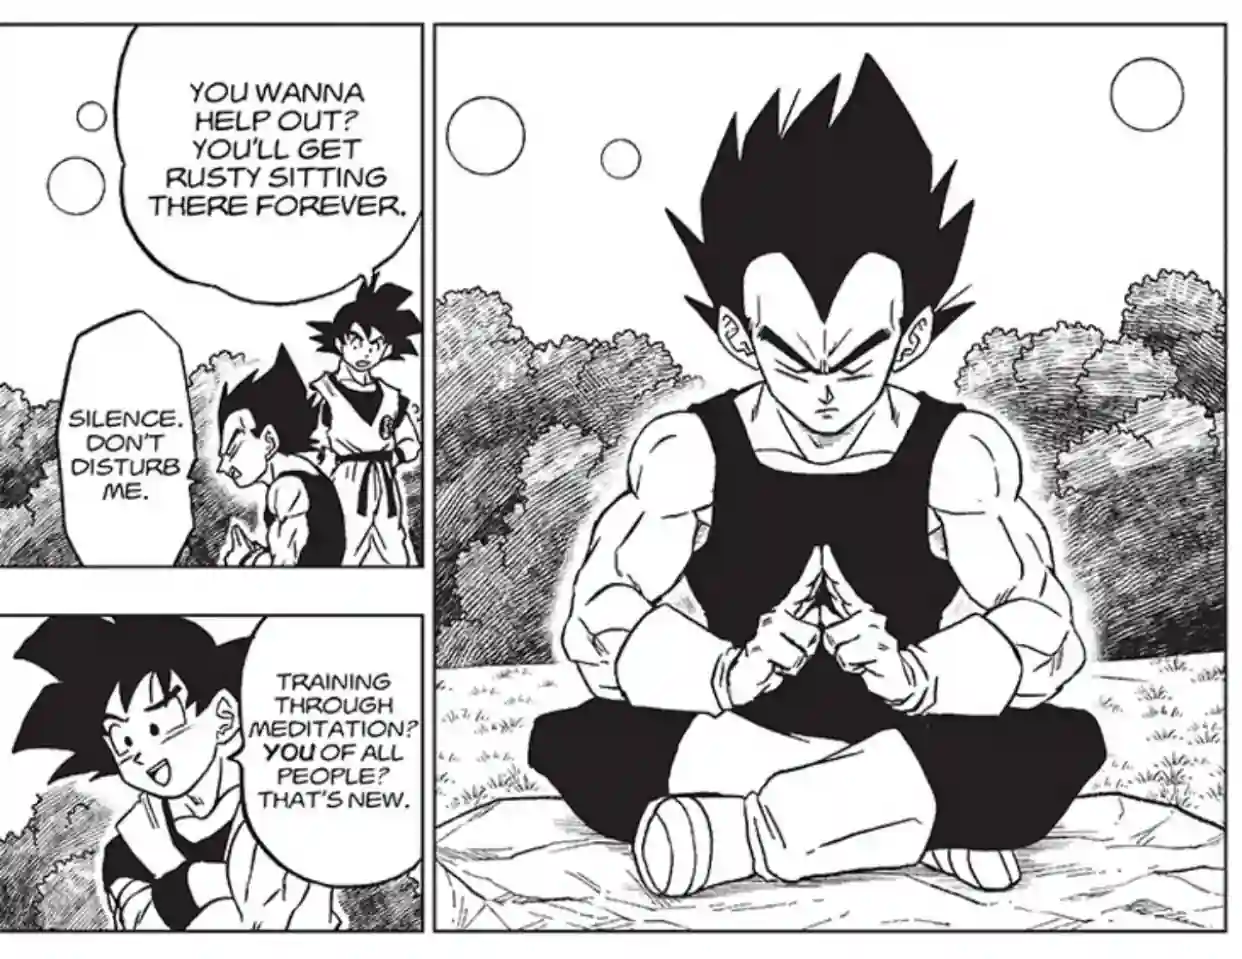 Diferente do filme, Goku reconhece meditação como treinamento no mangá de Dragon Ball Super